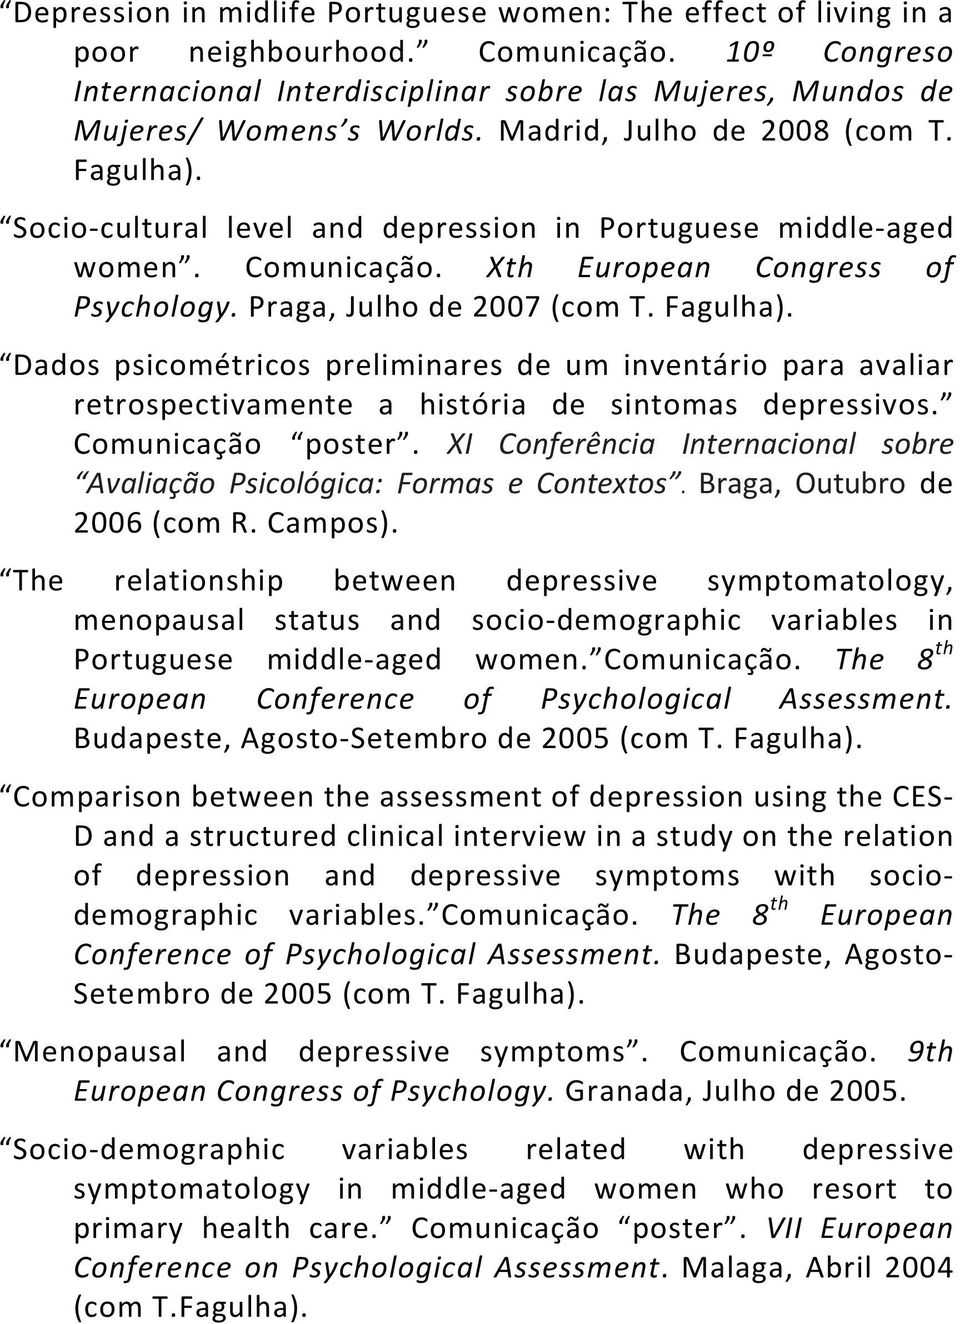 Comunicação poster. XI Conferência Internacional sobre Avaliação Psicológica: Formas e Contextos. Braga, Outubro de 2006 (com R. Campos).